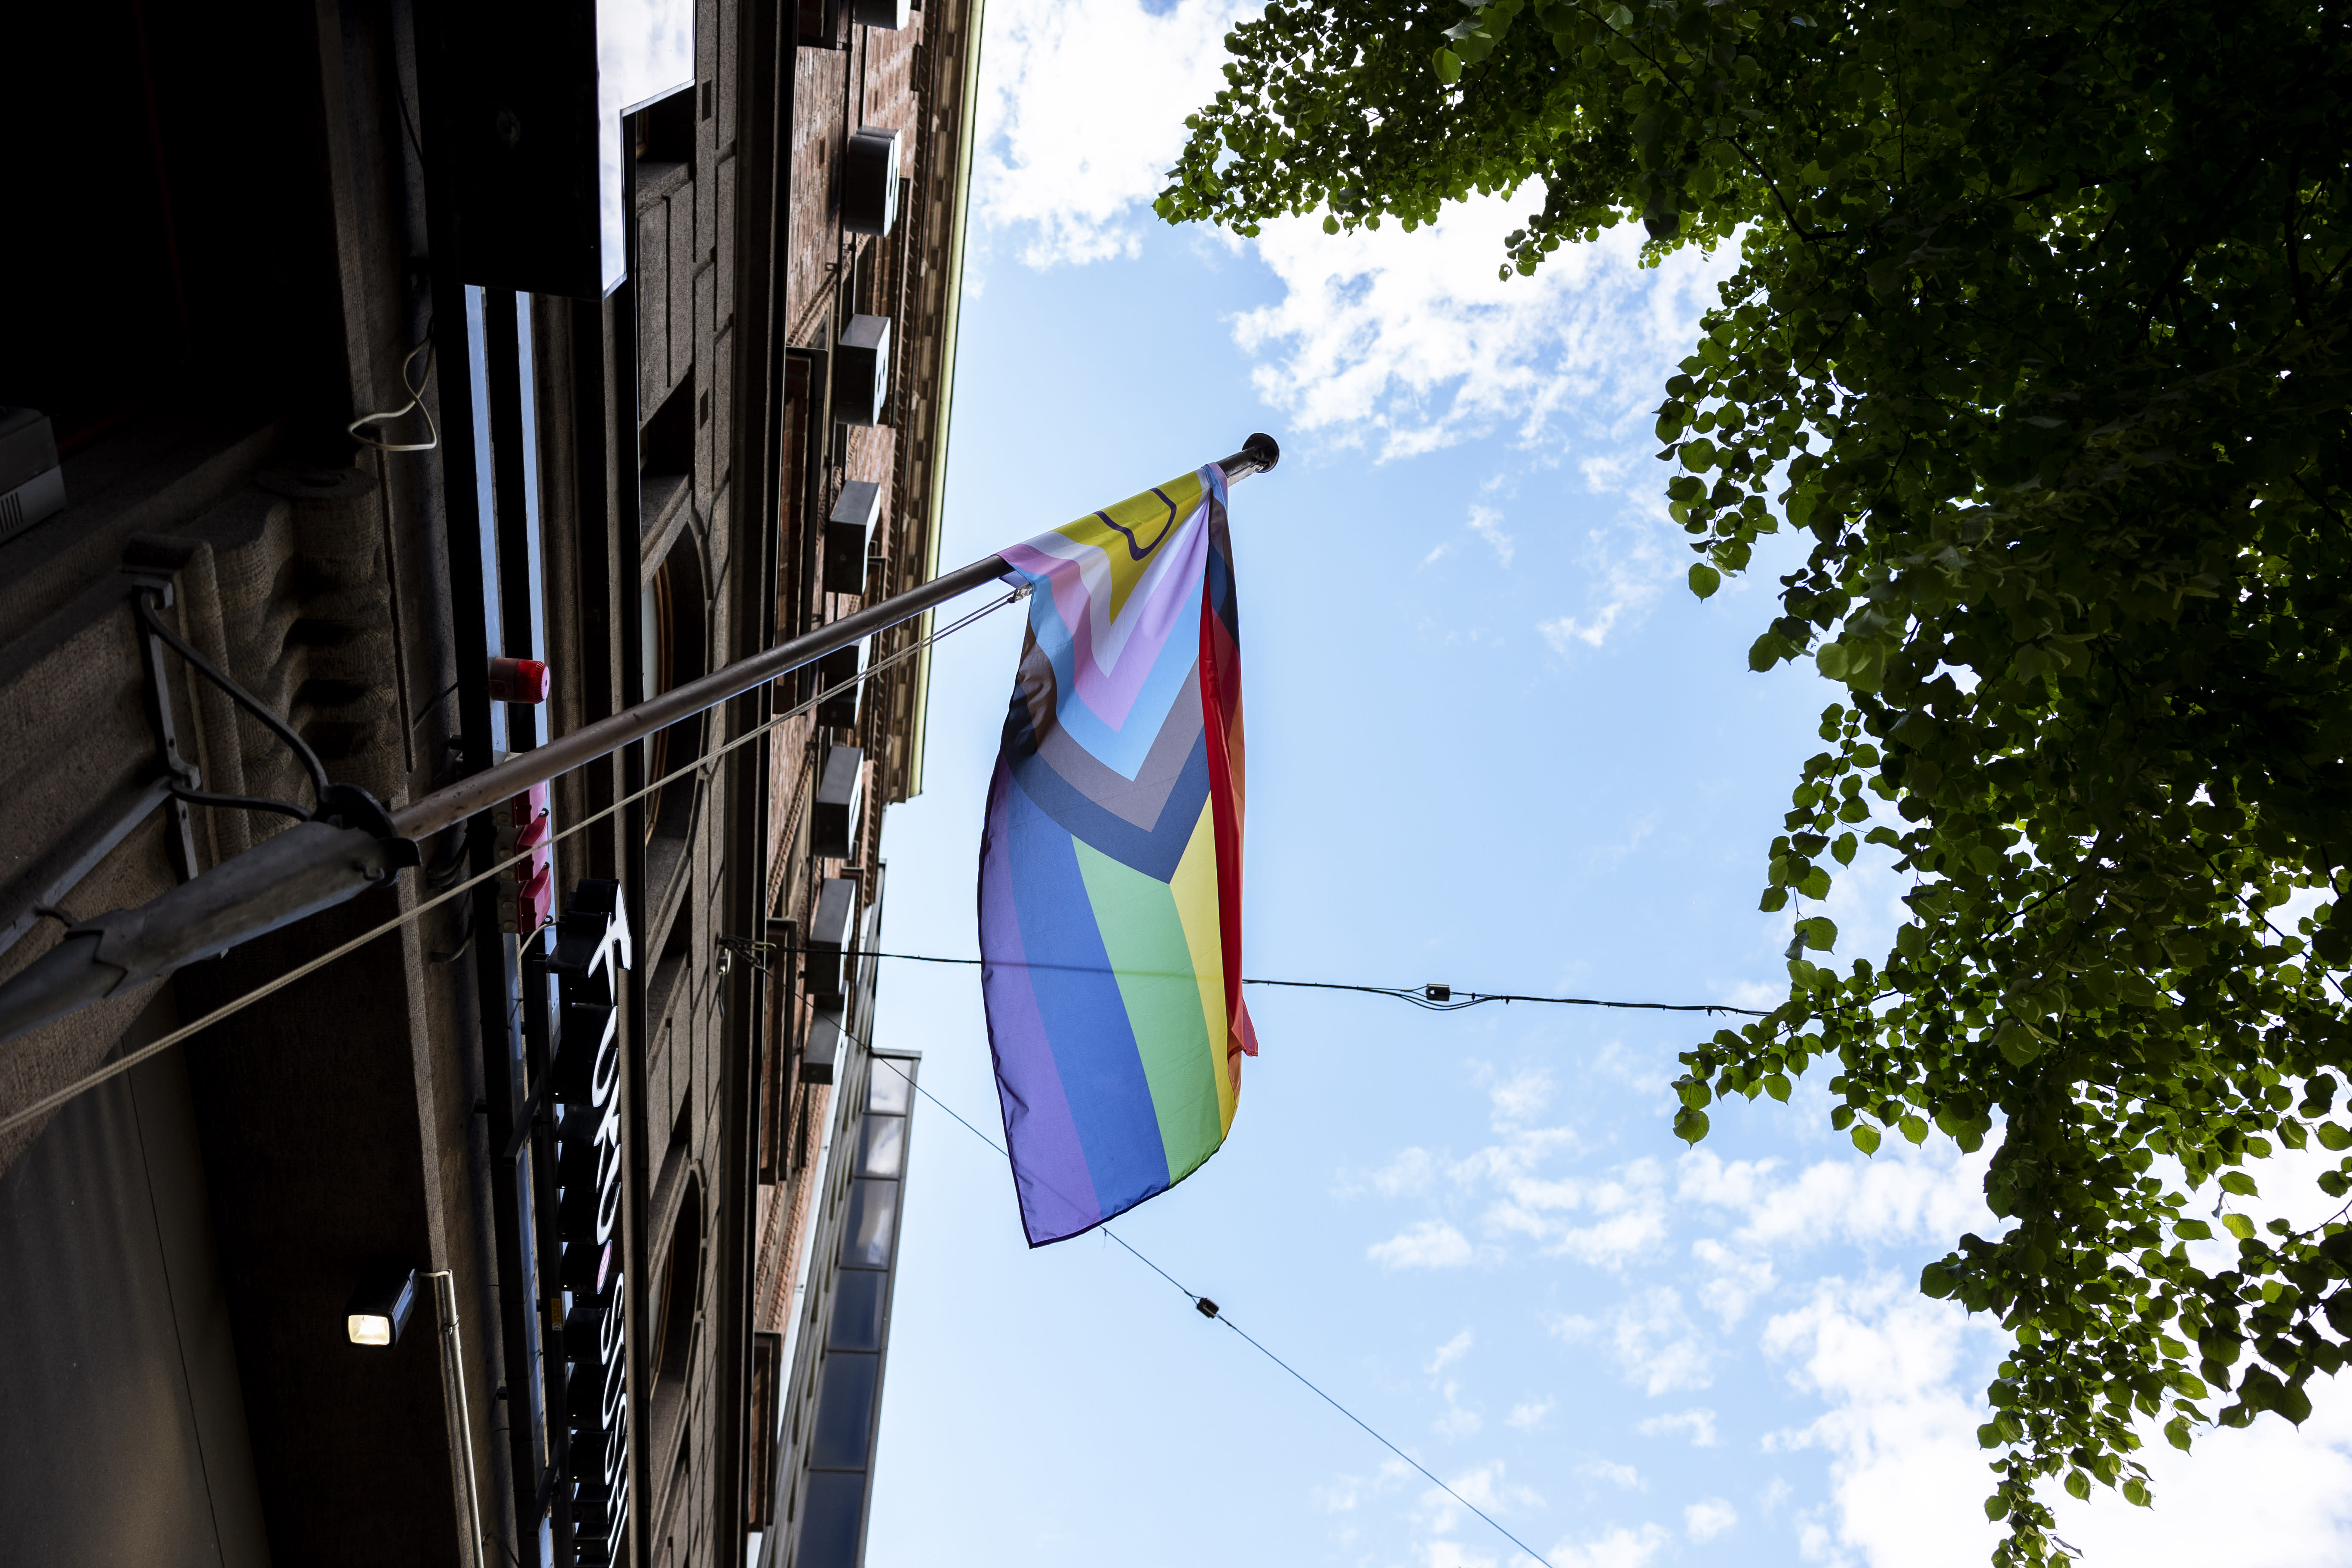 Helsinki Pride jemputan NCP, sayap belia Center selepas hidangan pembuka selera